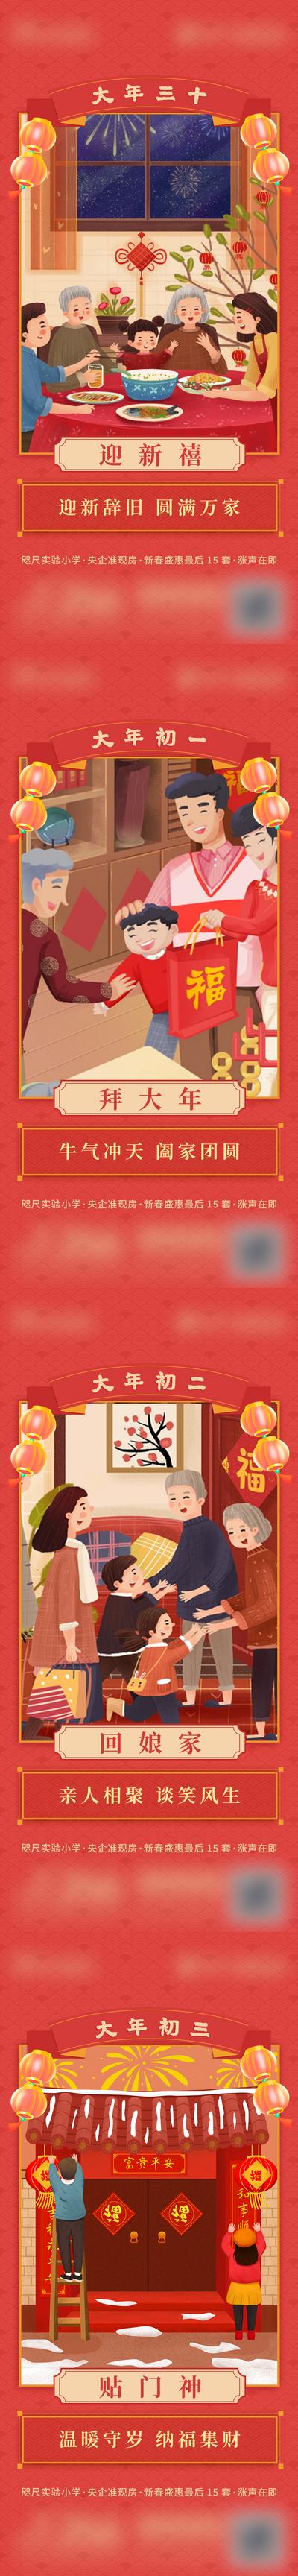 南门网 海报 房地产 中国传统节日 除夕 初一 年俗 插画 系列